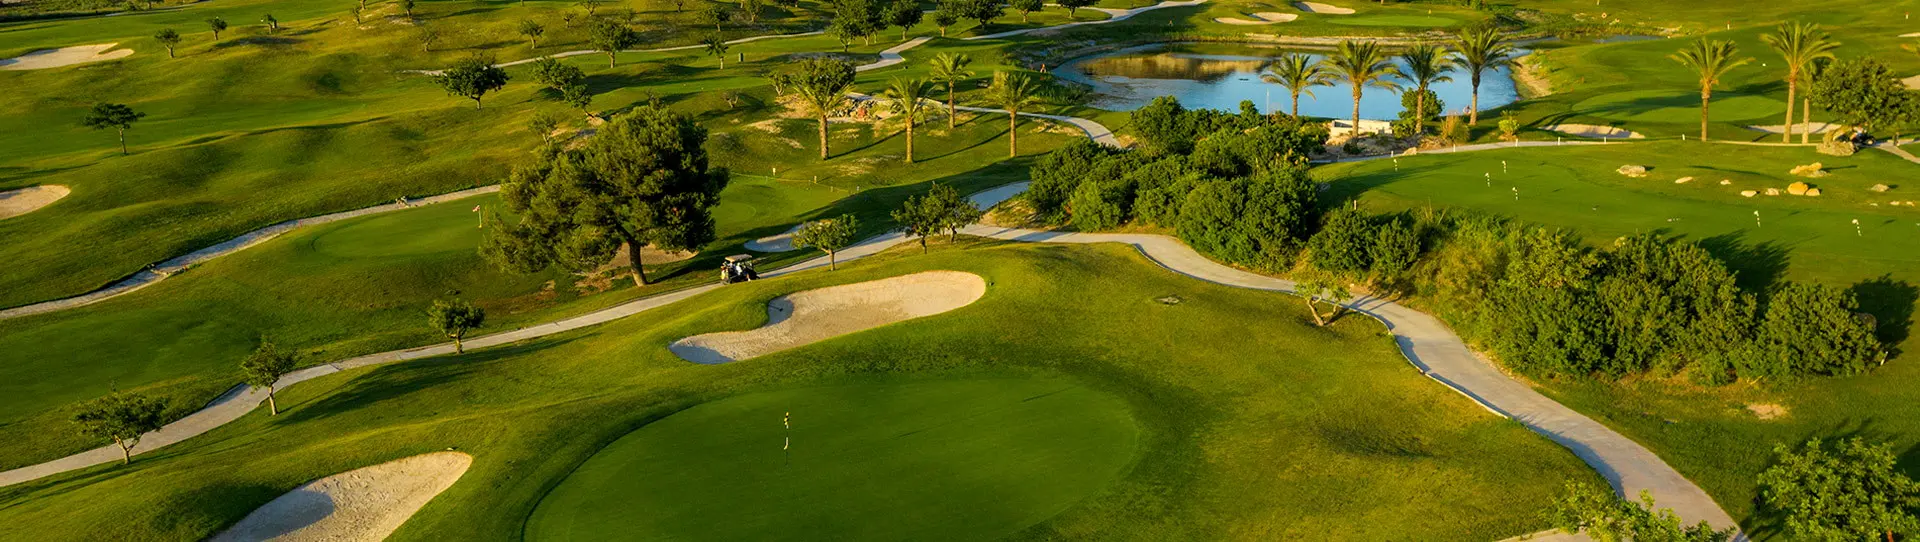 Spain golf courses - Font del Llop Golf Course - Photo 1